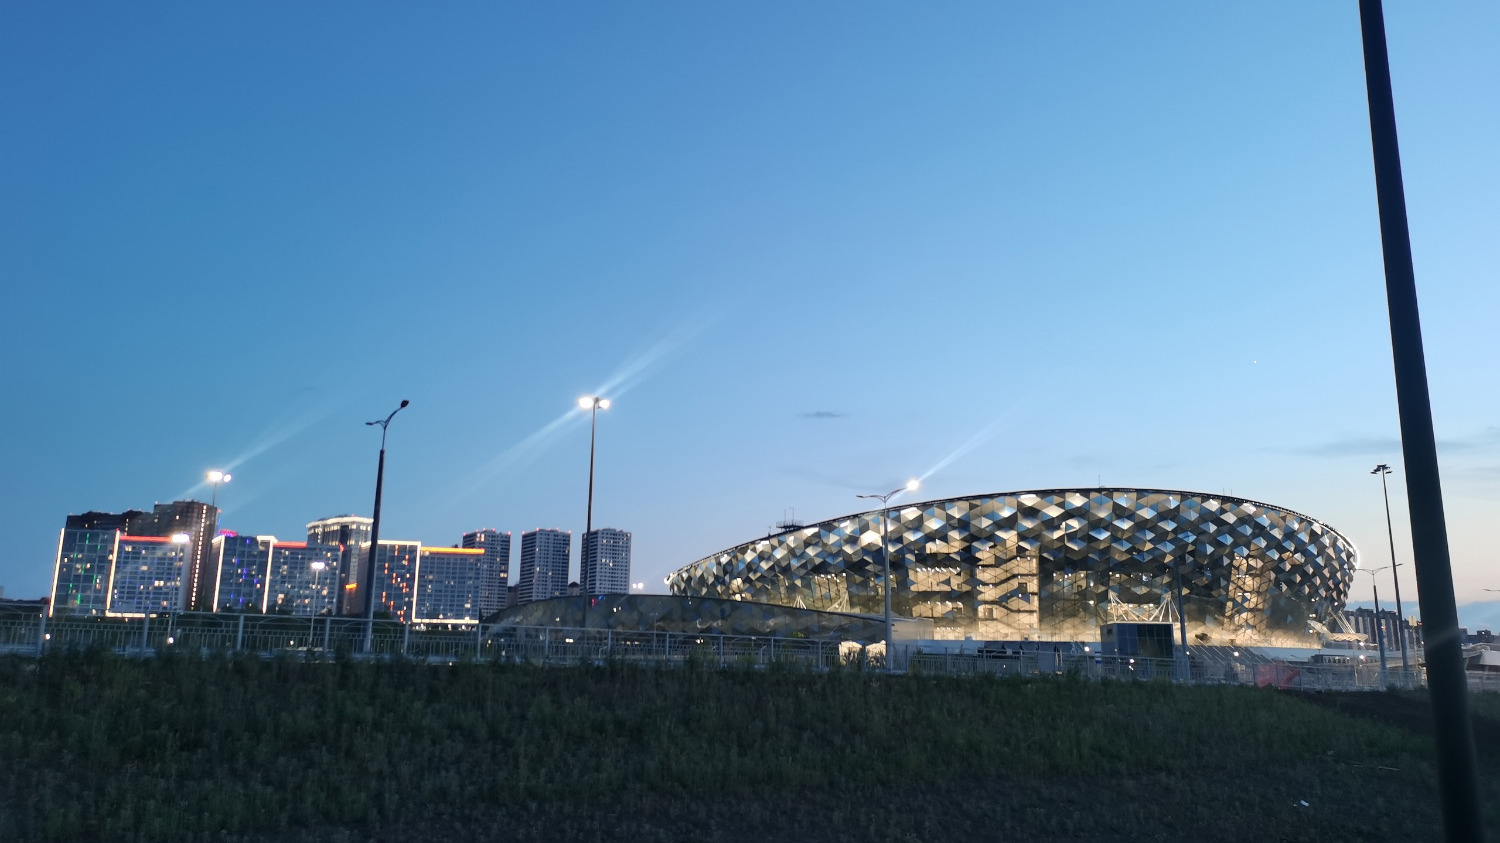 Официальный ввод в эксплуатацию ЛДС "Сибирь Арена" состоялся в последние дни 2022 года, но и в июле 2023 нога зрителя не ступала на его трибуны